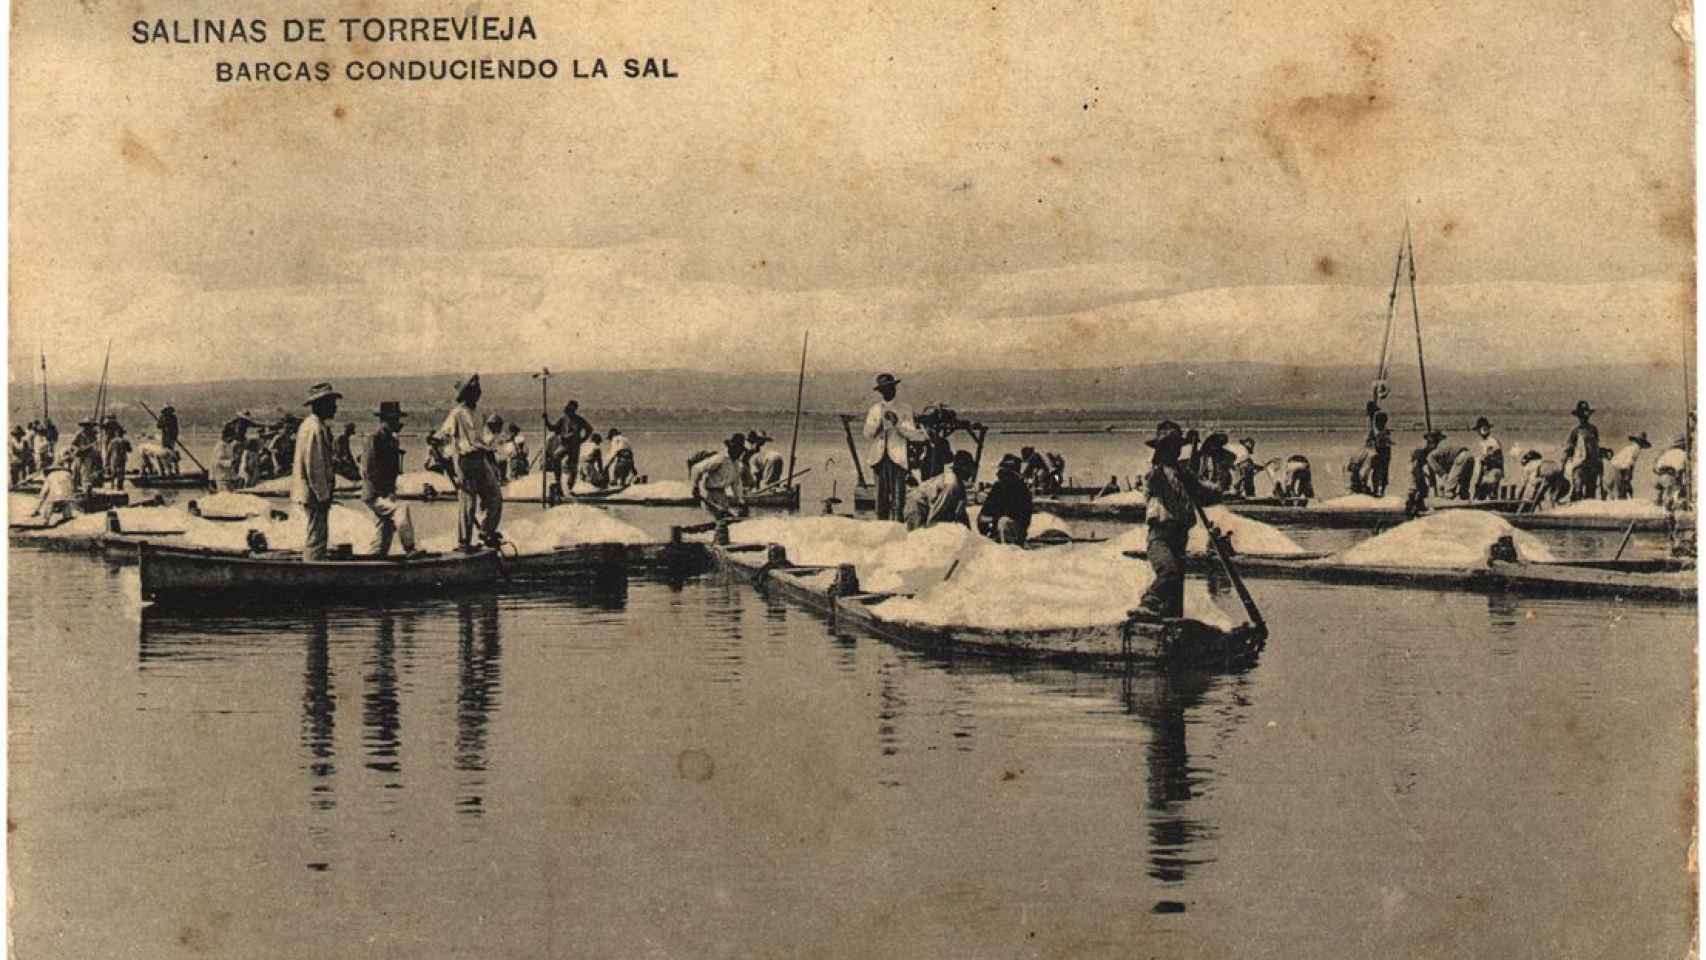 Barcas conduciendo la sal por las salinas de Torrevieja.